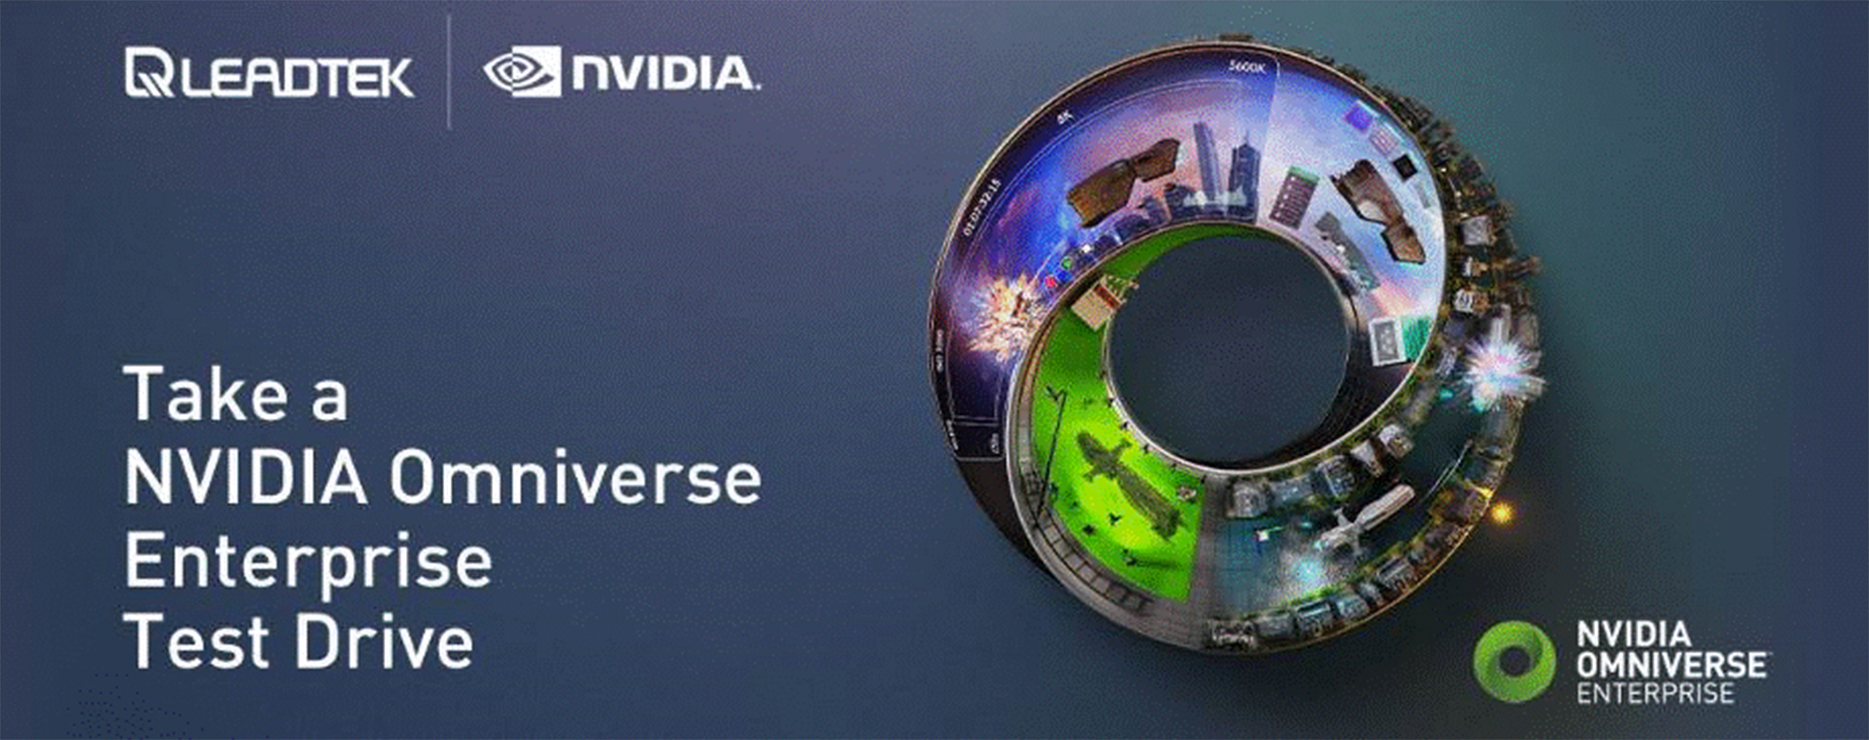 NVIDIA Omniverse Enterprise แพลตฟอร์มออกแบบ 3 มิติเสมือนจริง ตอบโจทย์ทุกกลุ่มอุตสาหกรรม